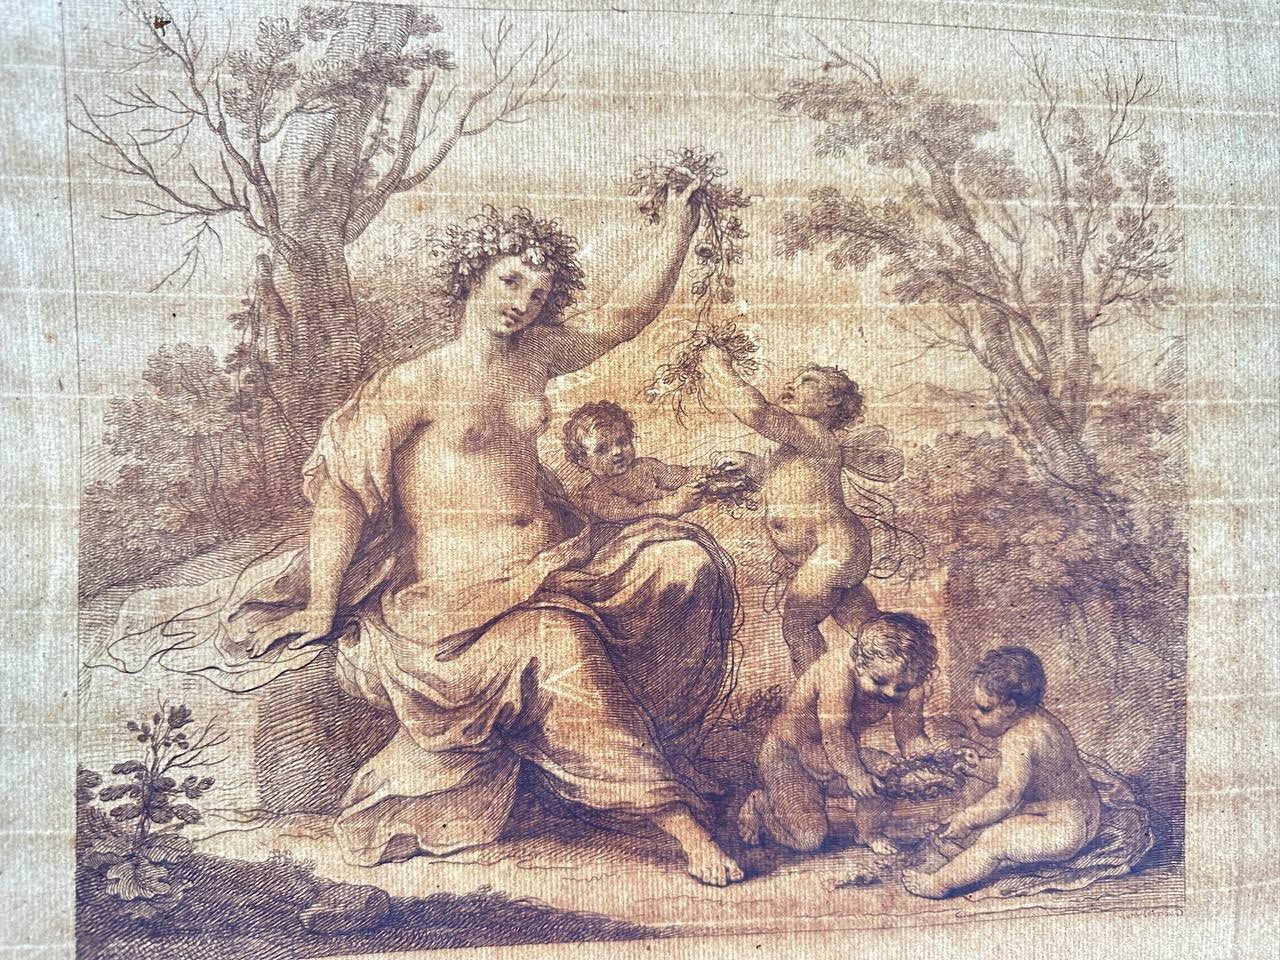 Rare Engraving - Flora with Four Putti - Francesco Bartolozzi - Guercino - 1764